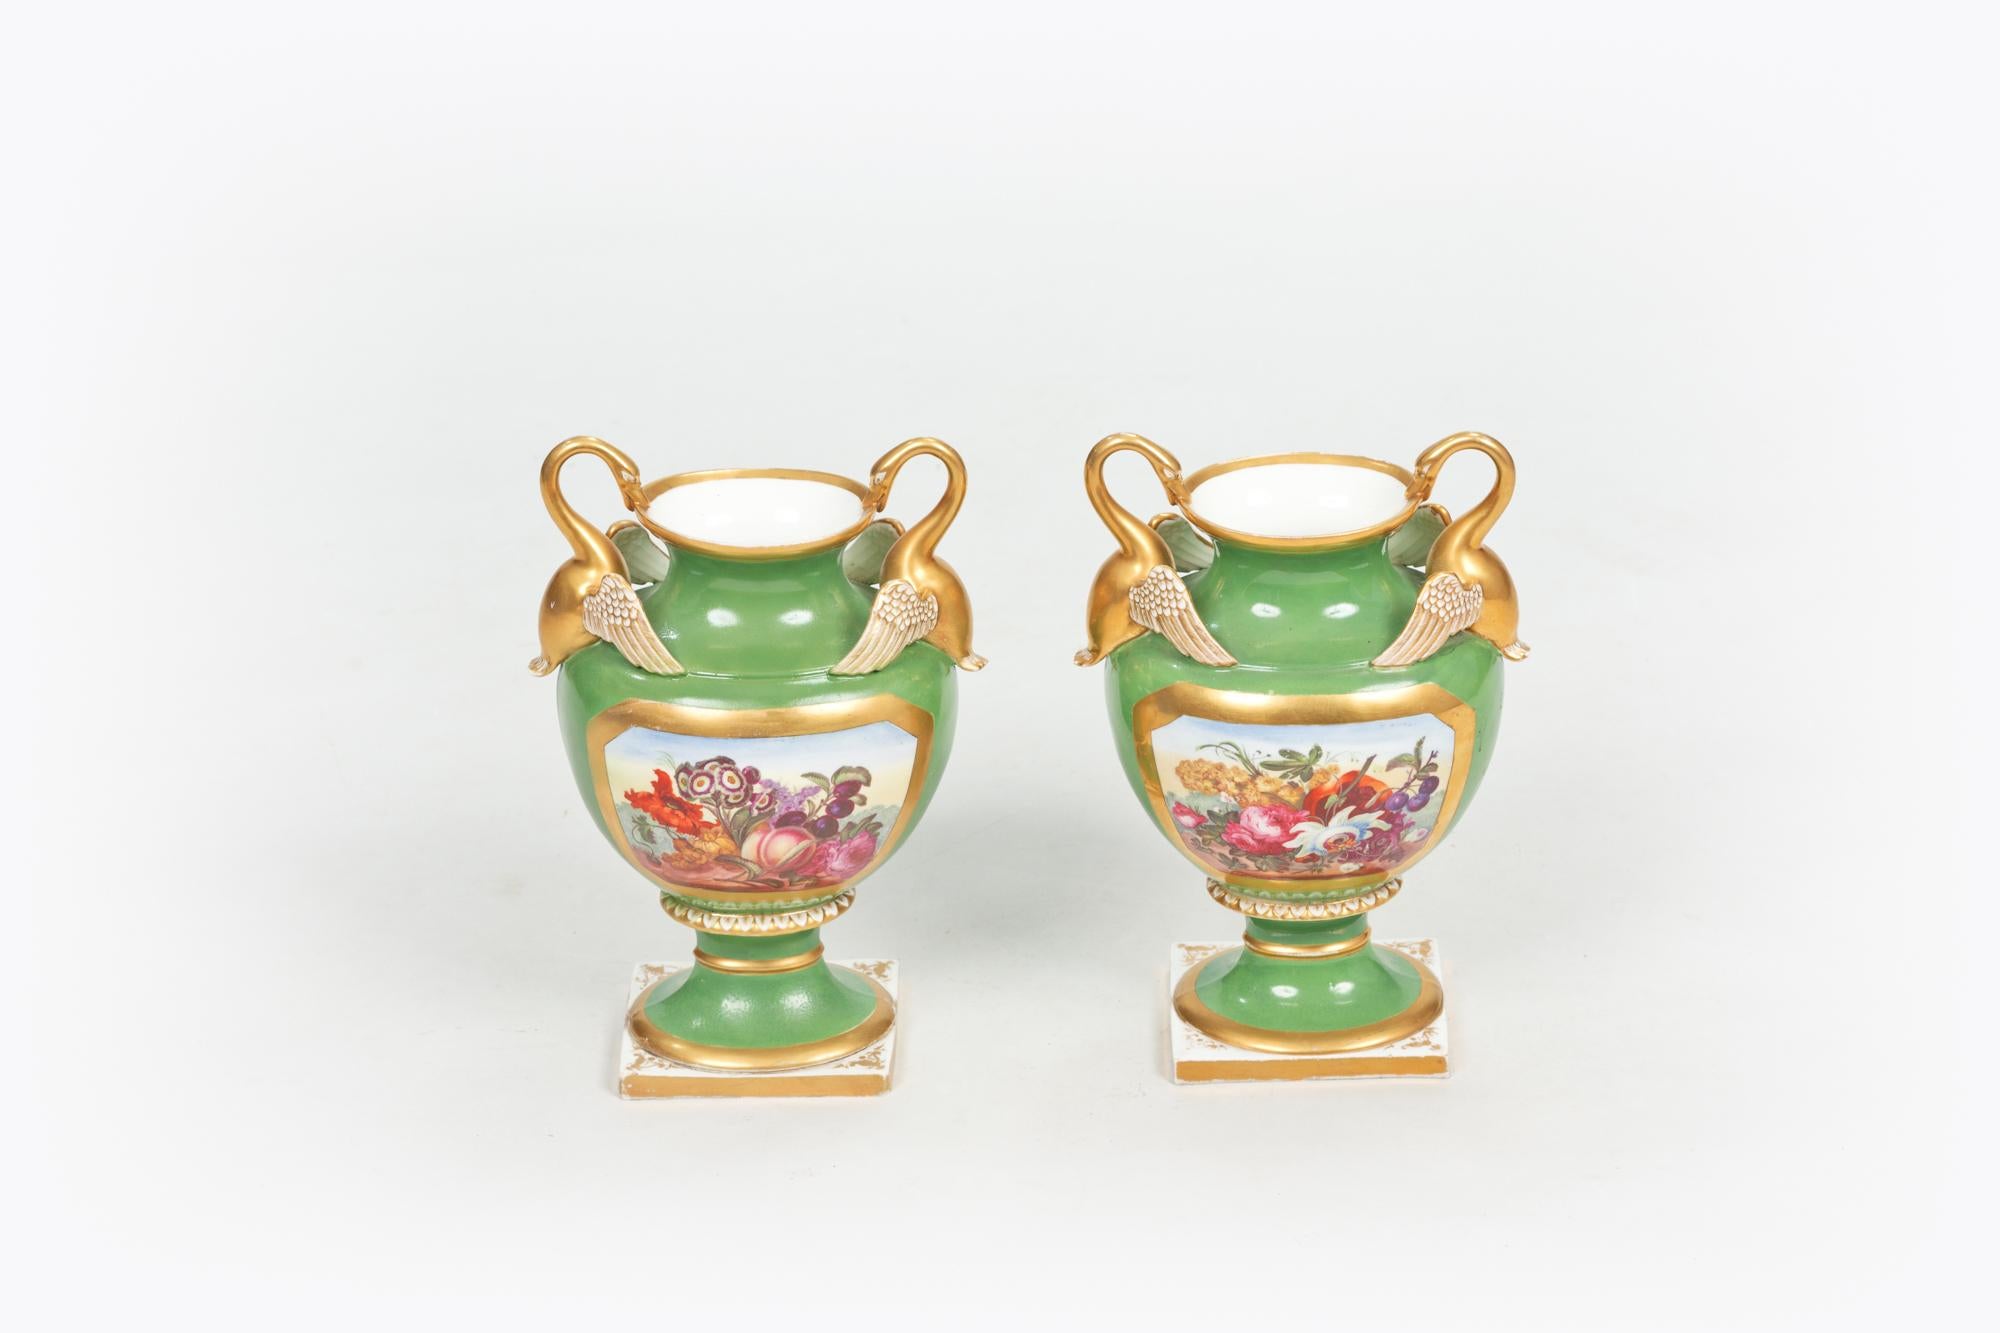 Frühes 19. Jahrhundert Regency-Derby-Vasenpaar, der umgedrehte Rand mit vergoldetem Band auf weißem Grund erhebt sich über einem Balusterkörper mit grünem Grund und vergoldeter Kartusche, die ein polychromes Blattmotiv zeigt, flankiert von zwei